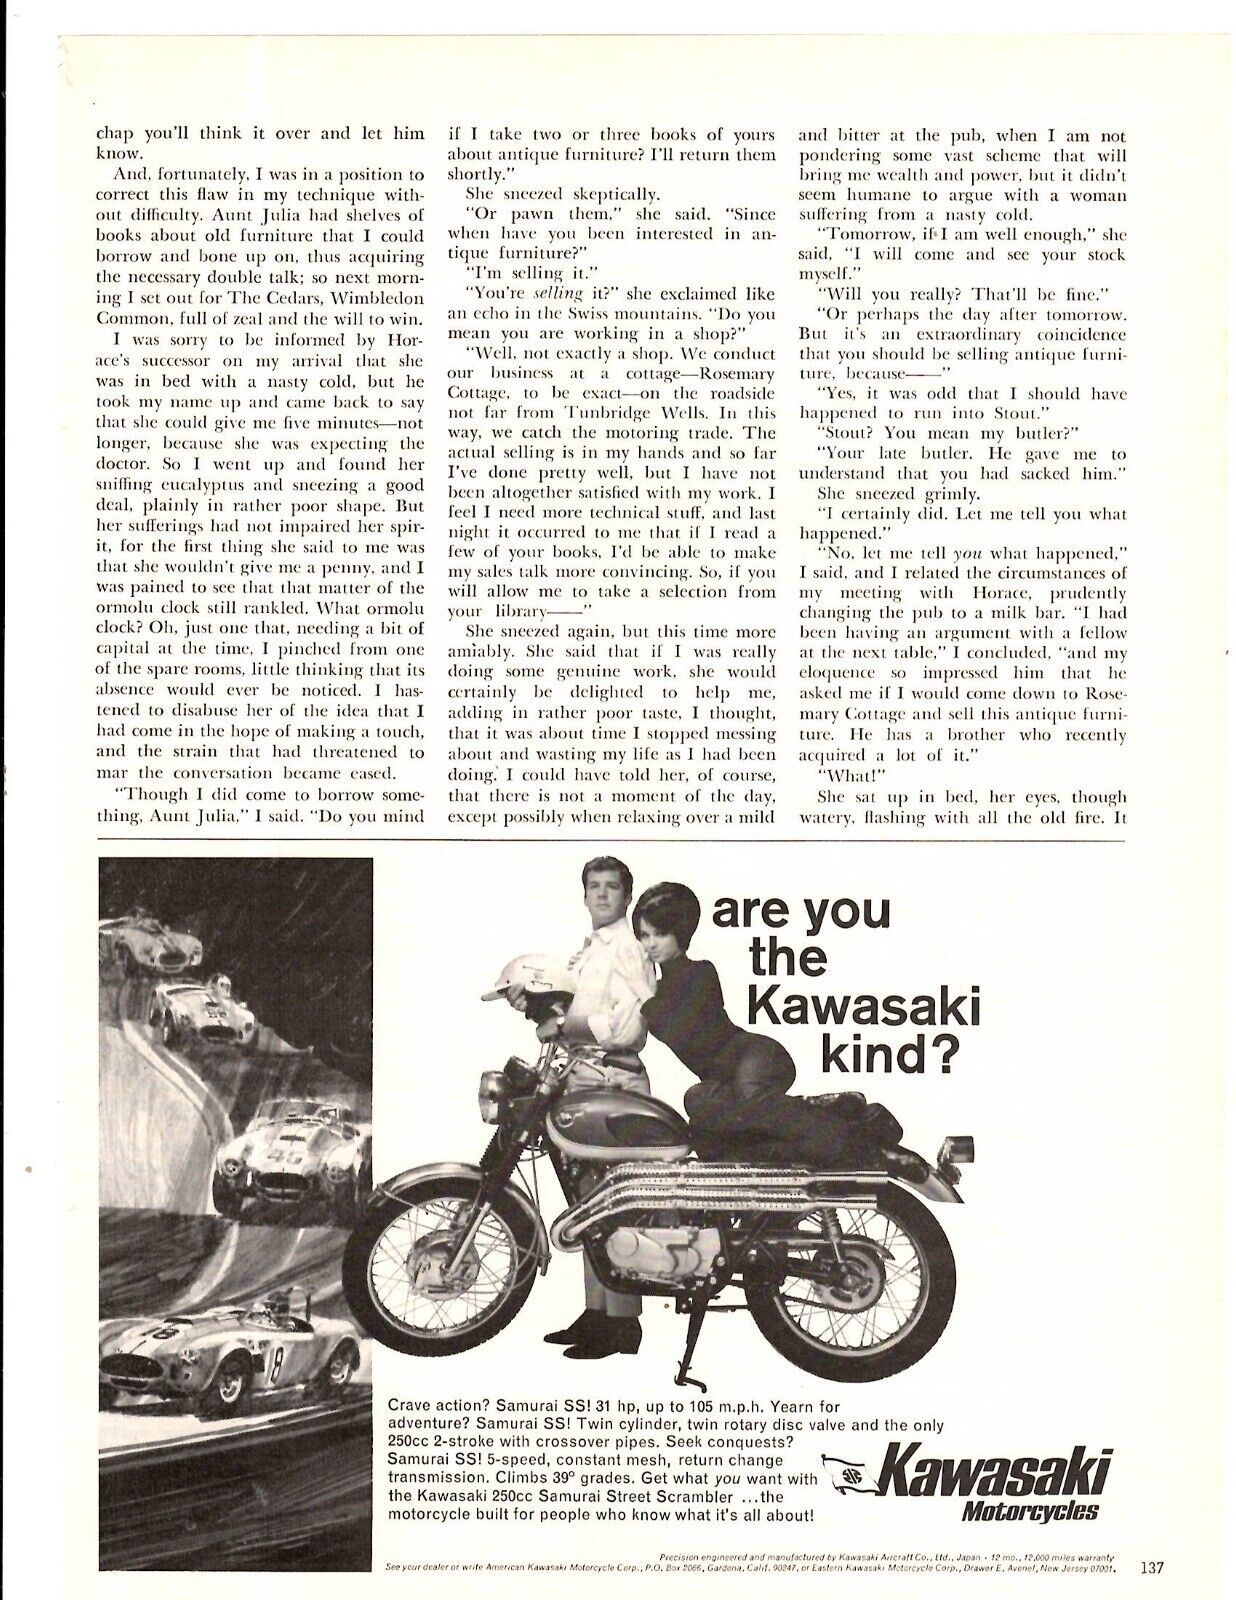 1967 Print Ad Kawasaki Motorcycles Crave Action? Samurai SS 31 hp up to 105 mph